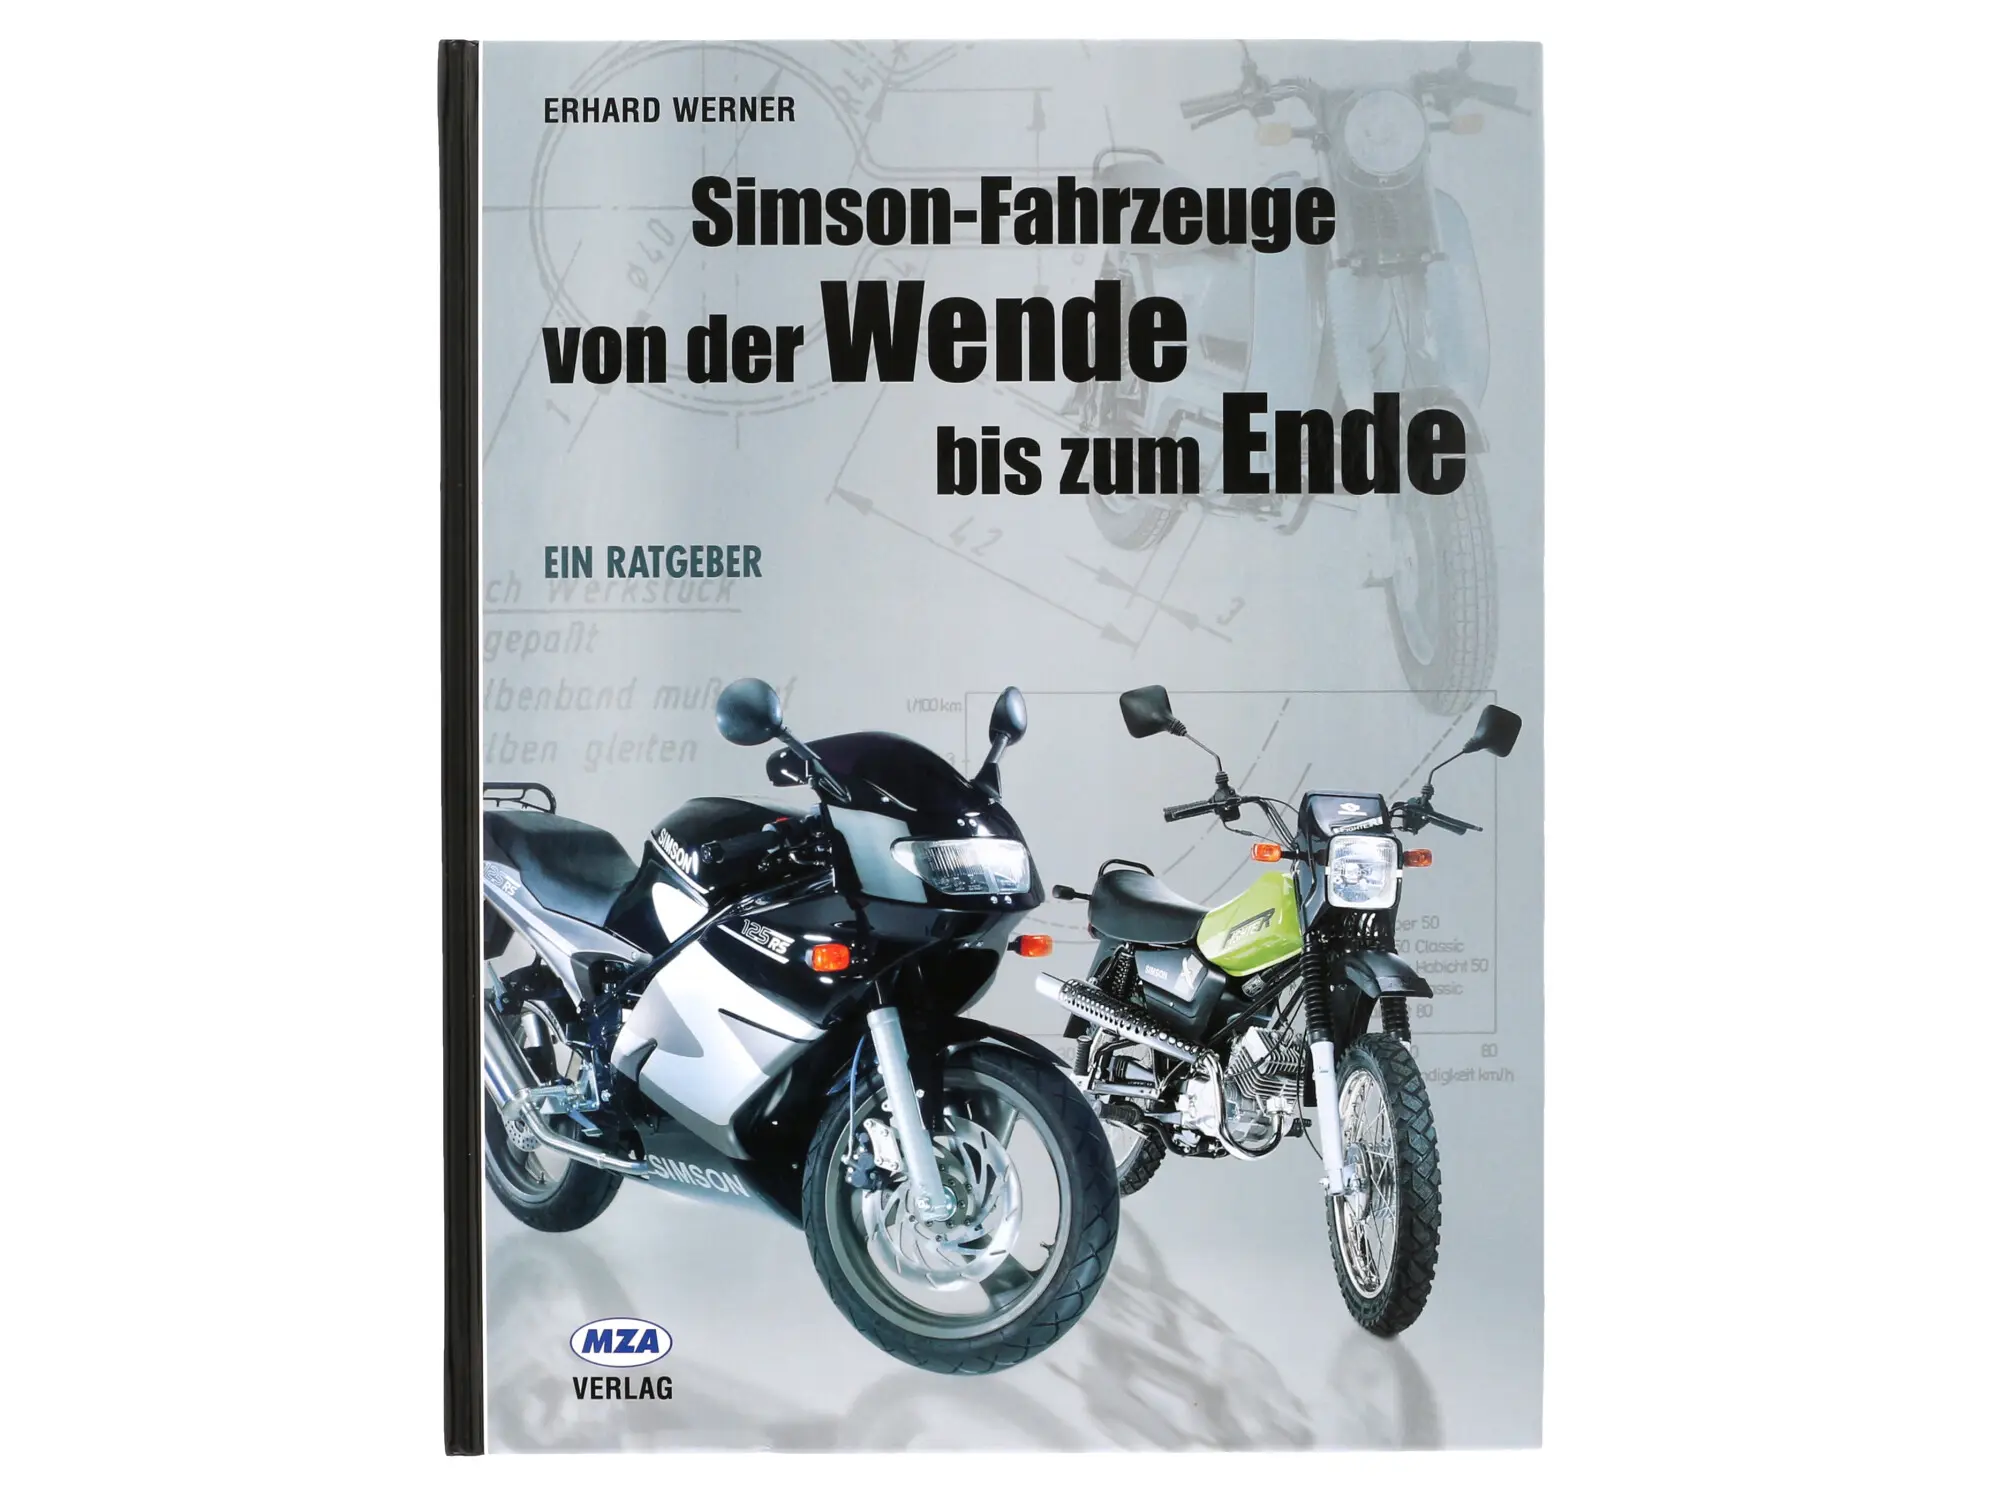 Buch - "Simson-Fahrzeuge von der Wende bis zum Ende", Art.-Nr.: 10002768 - Bild 1